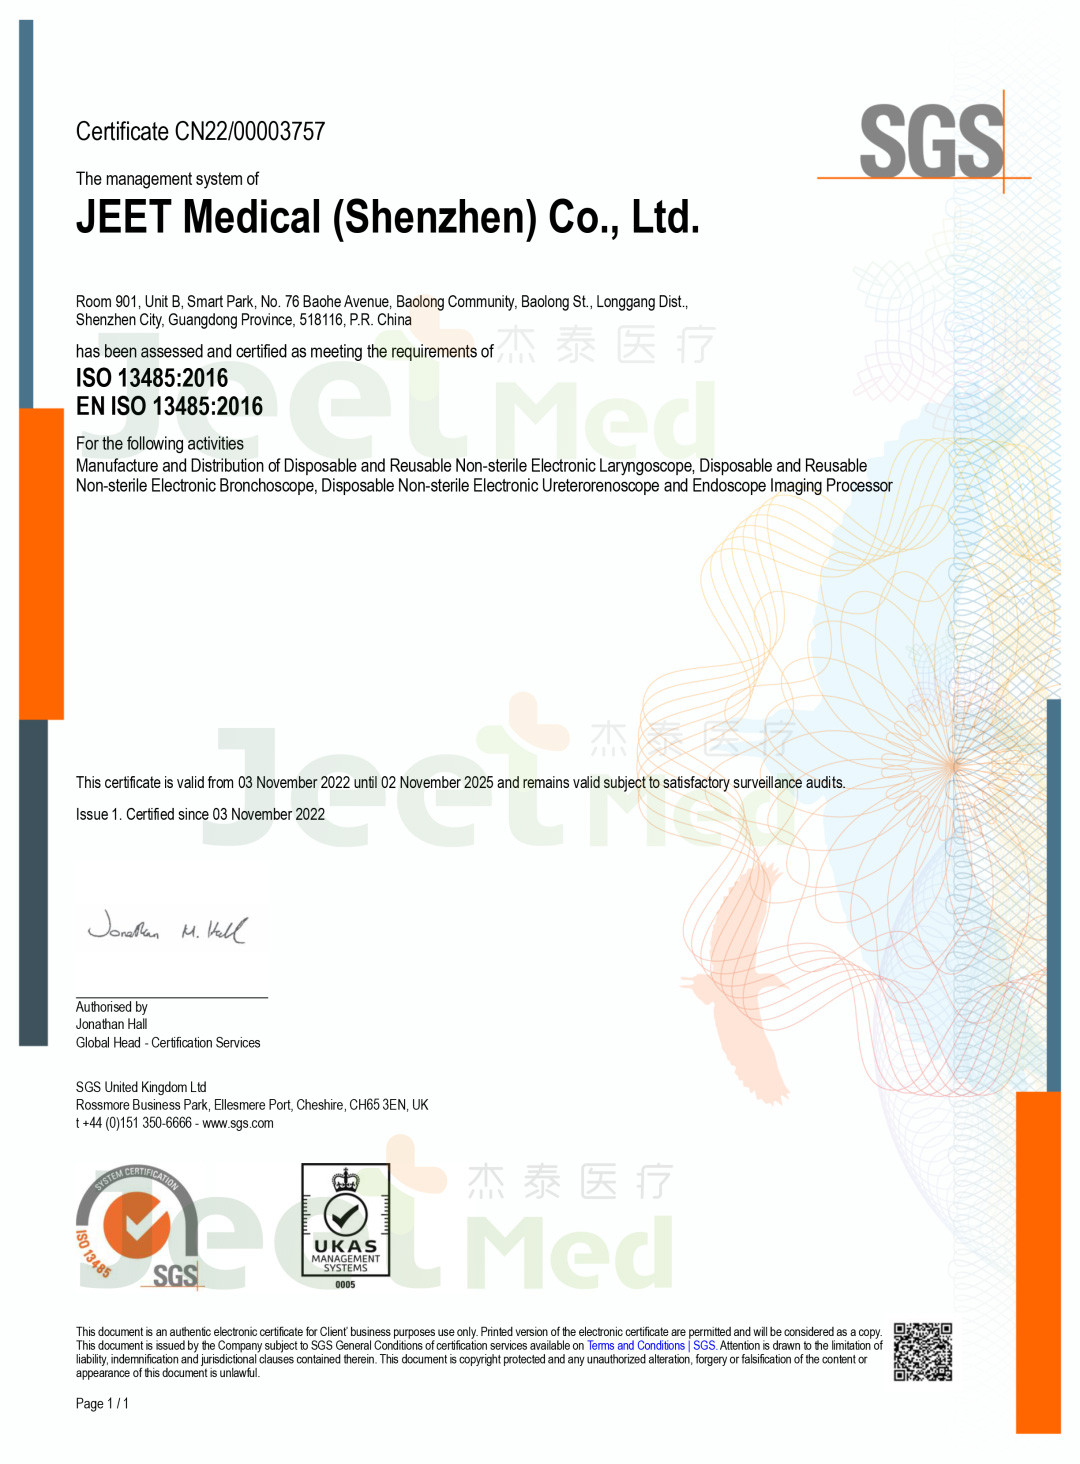 喜讯 | 杰泰医疗通过ISO 13485医疗器械质量管理体系认证